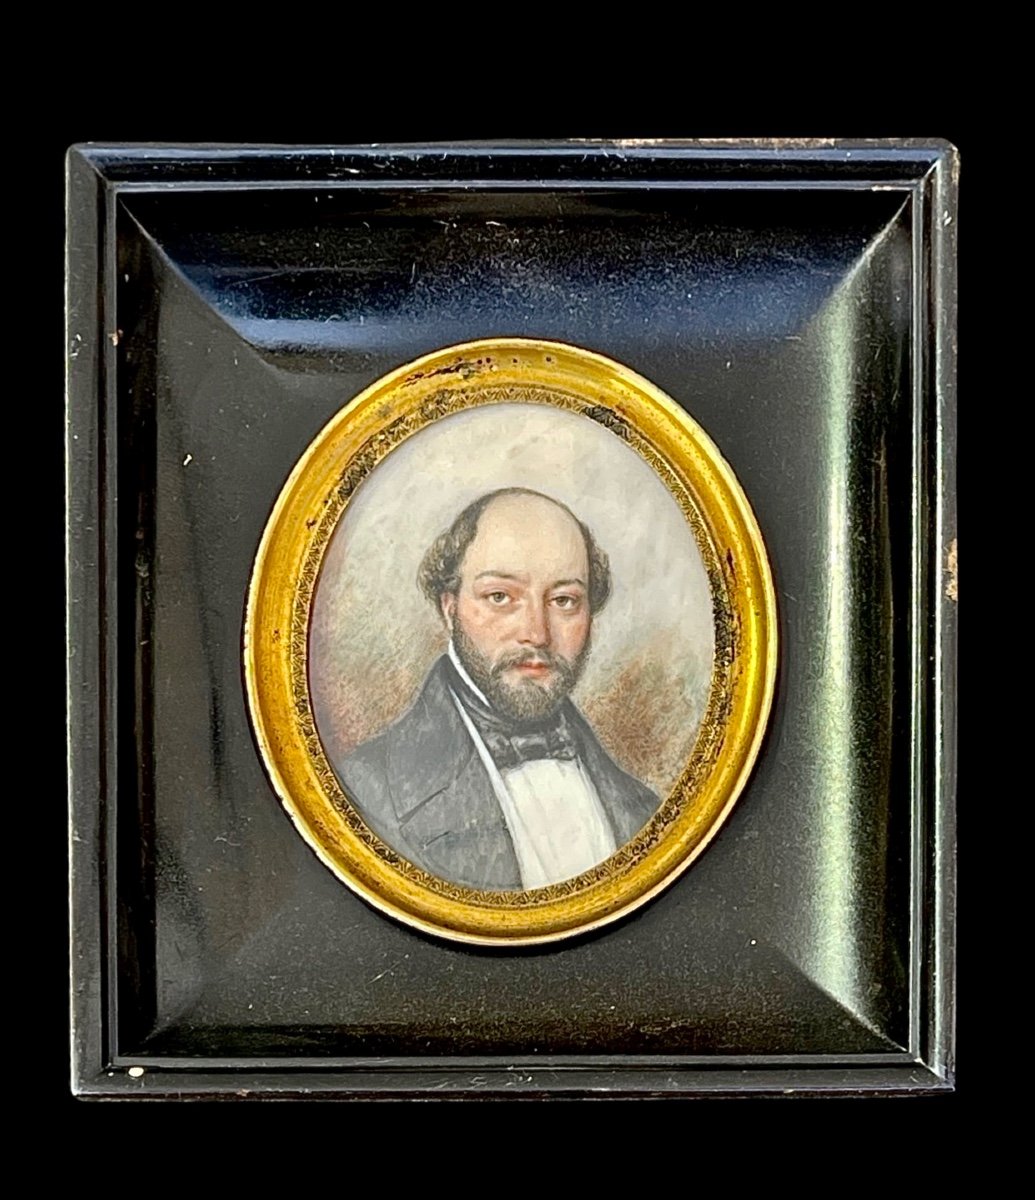 Miniatura incorniciata raffigurante personaggio maschile.Firma e data 1846.